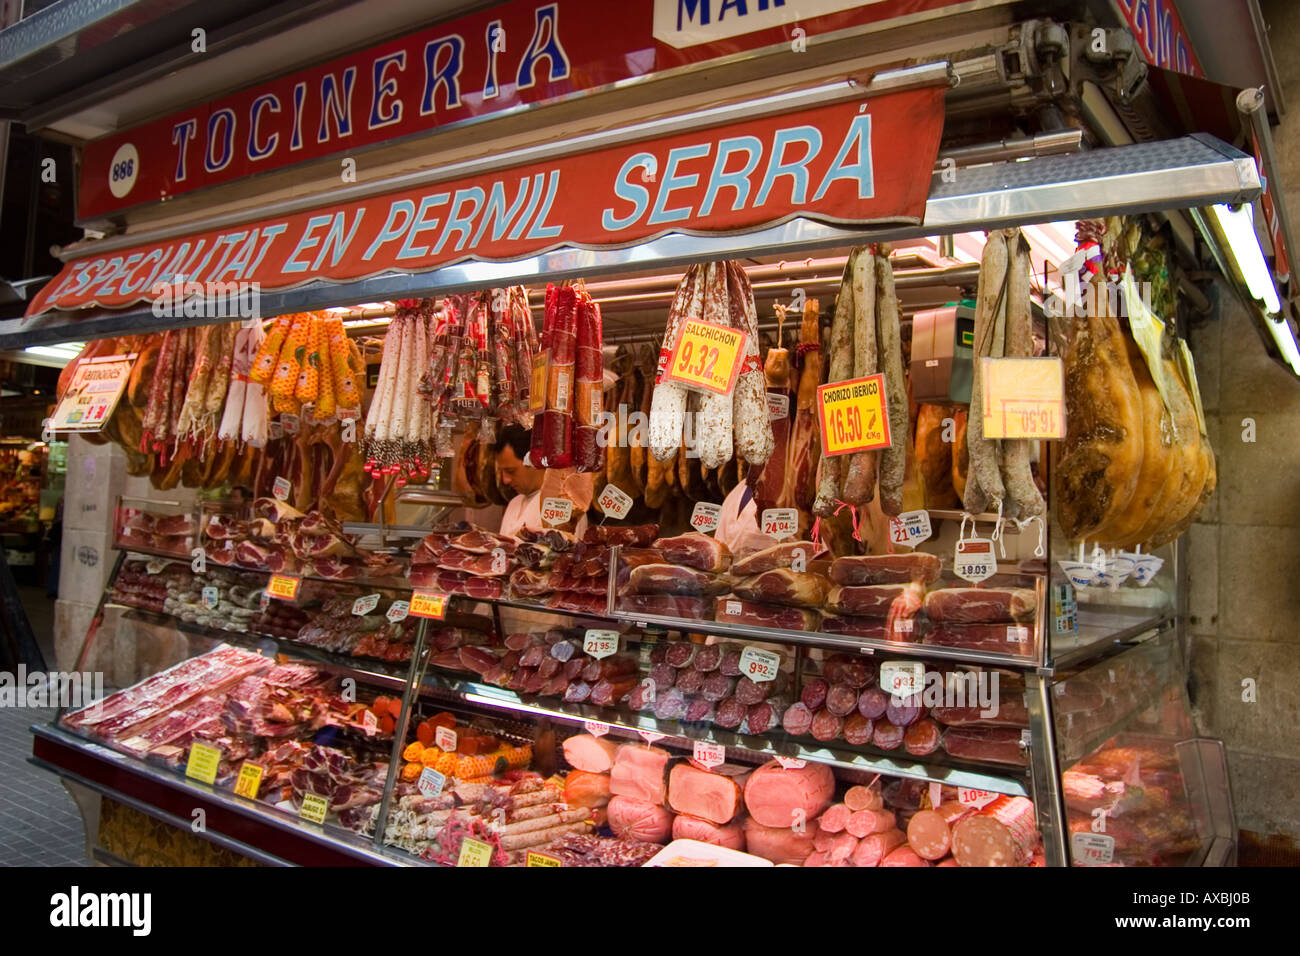 Barcelona Ramblas market hall la carne Boqeria stallo con prosciutto spagnolo Jammon prosciutto Serrano è appeso su garretti Foto Stock